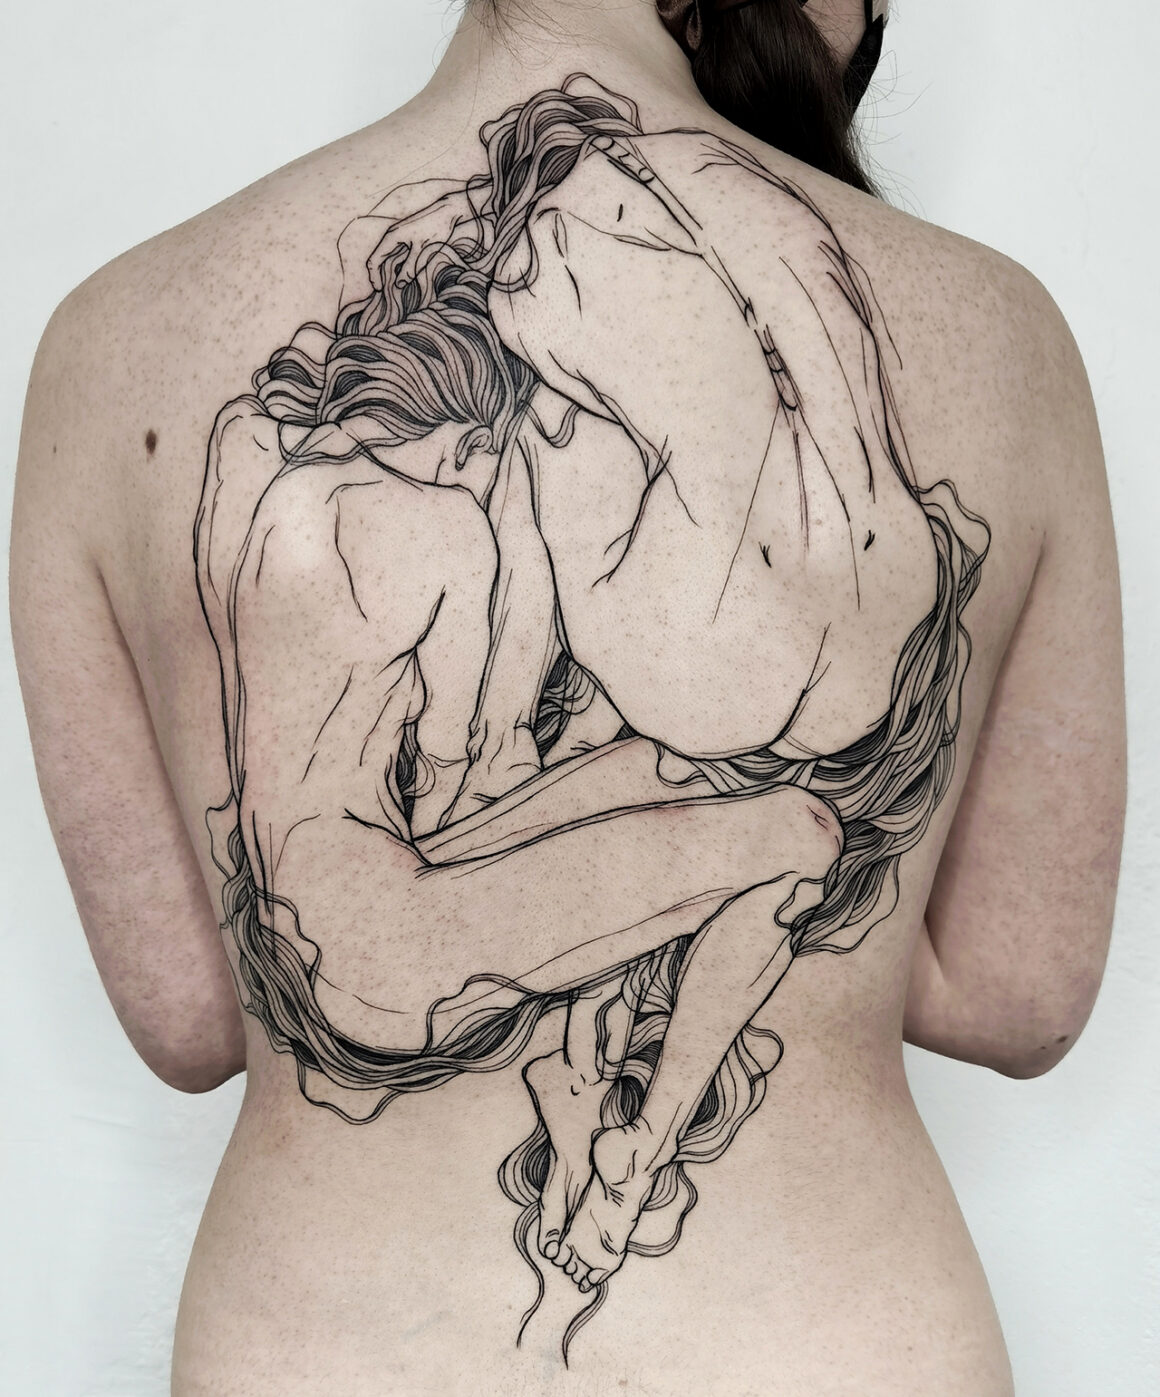 Tattoo by Nicolas Agus, @nicolasagus15